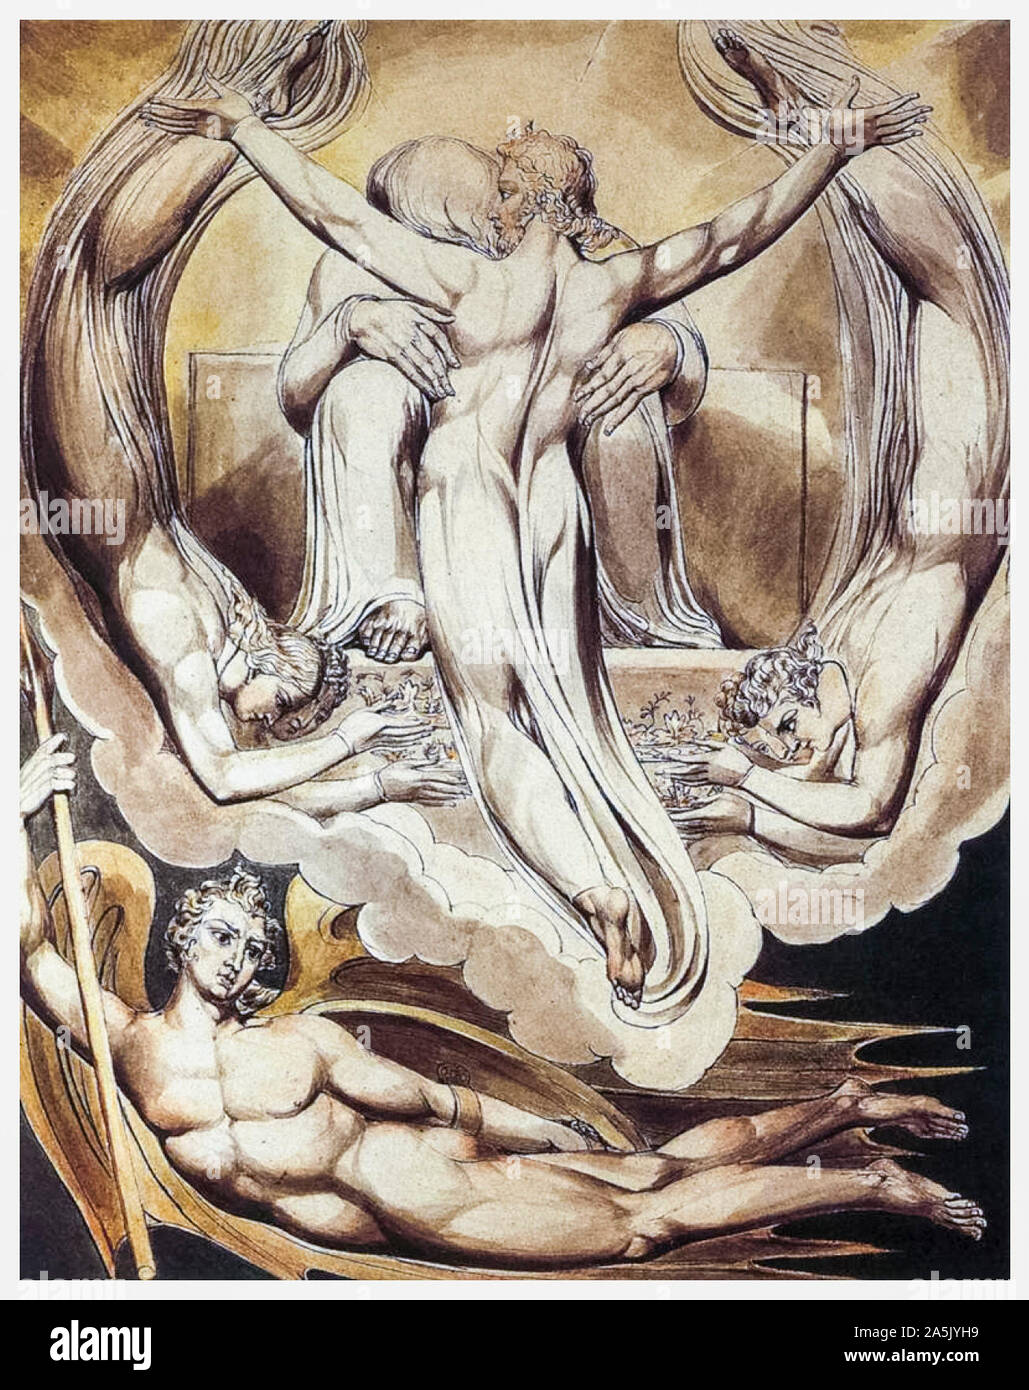 William Blake, Christ Rédempteur de l'homme, peinture aquarelle sur stylo et encre, illustration, 1808 Banque D'Images